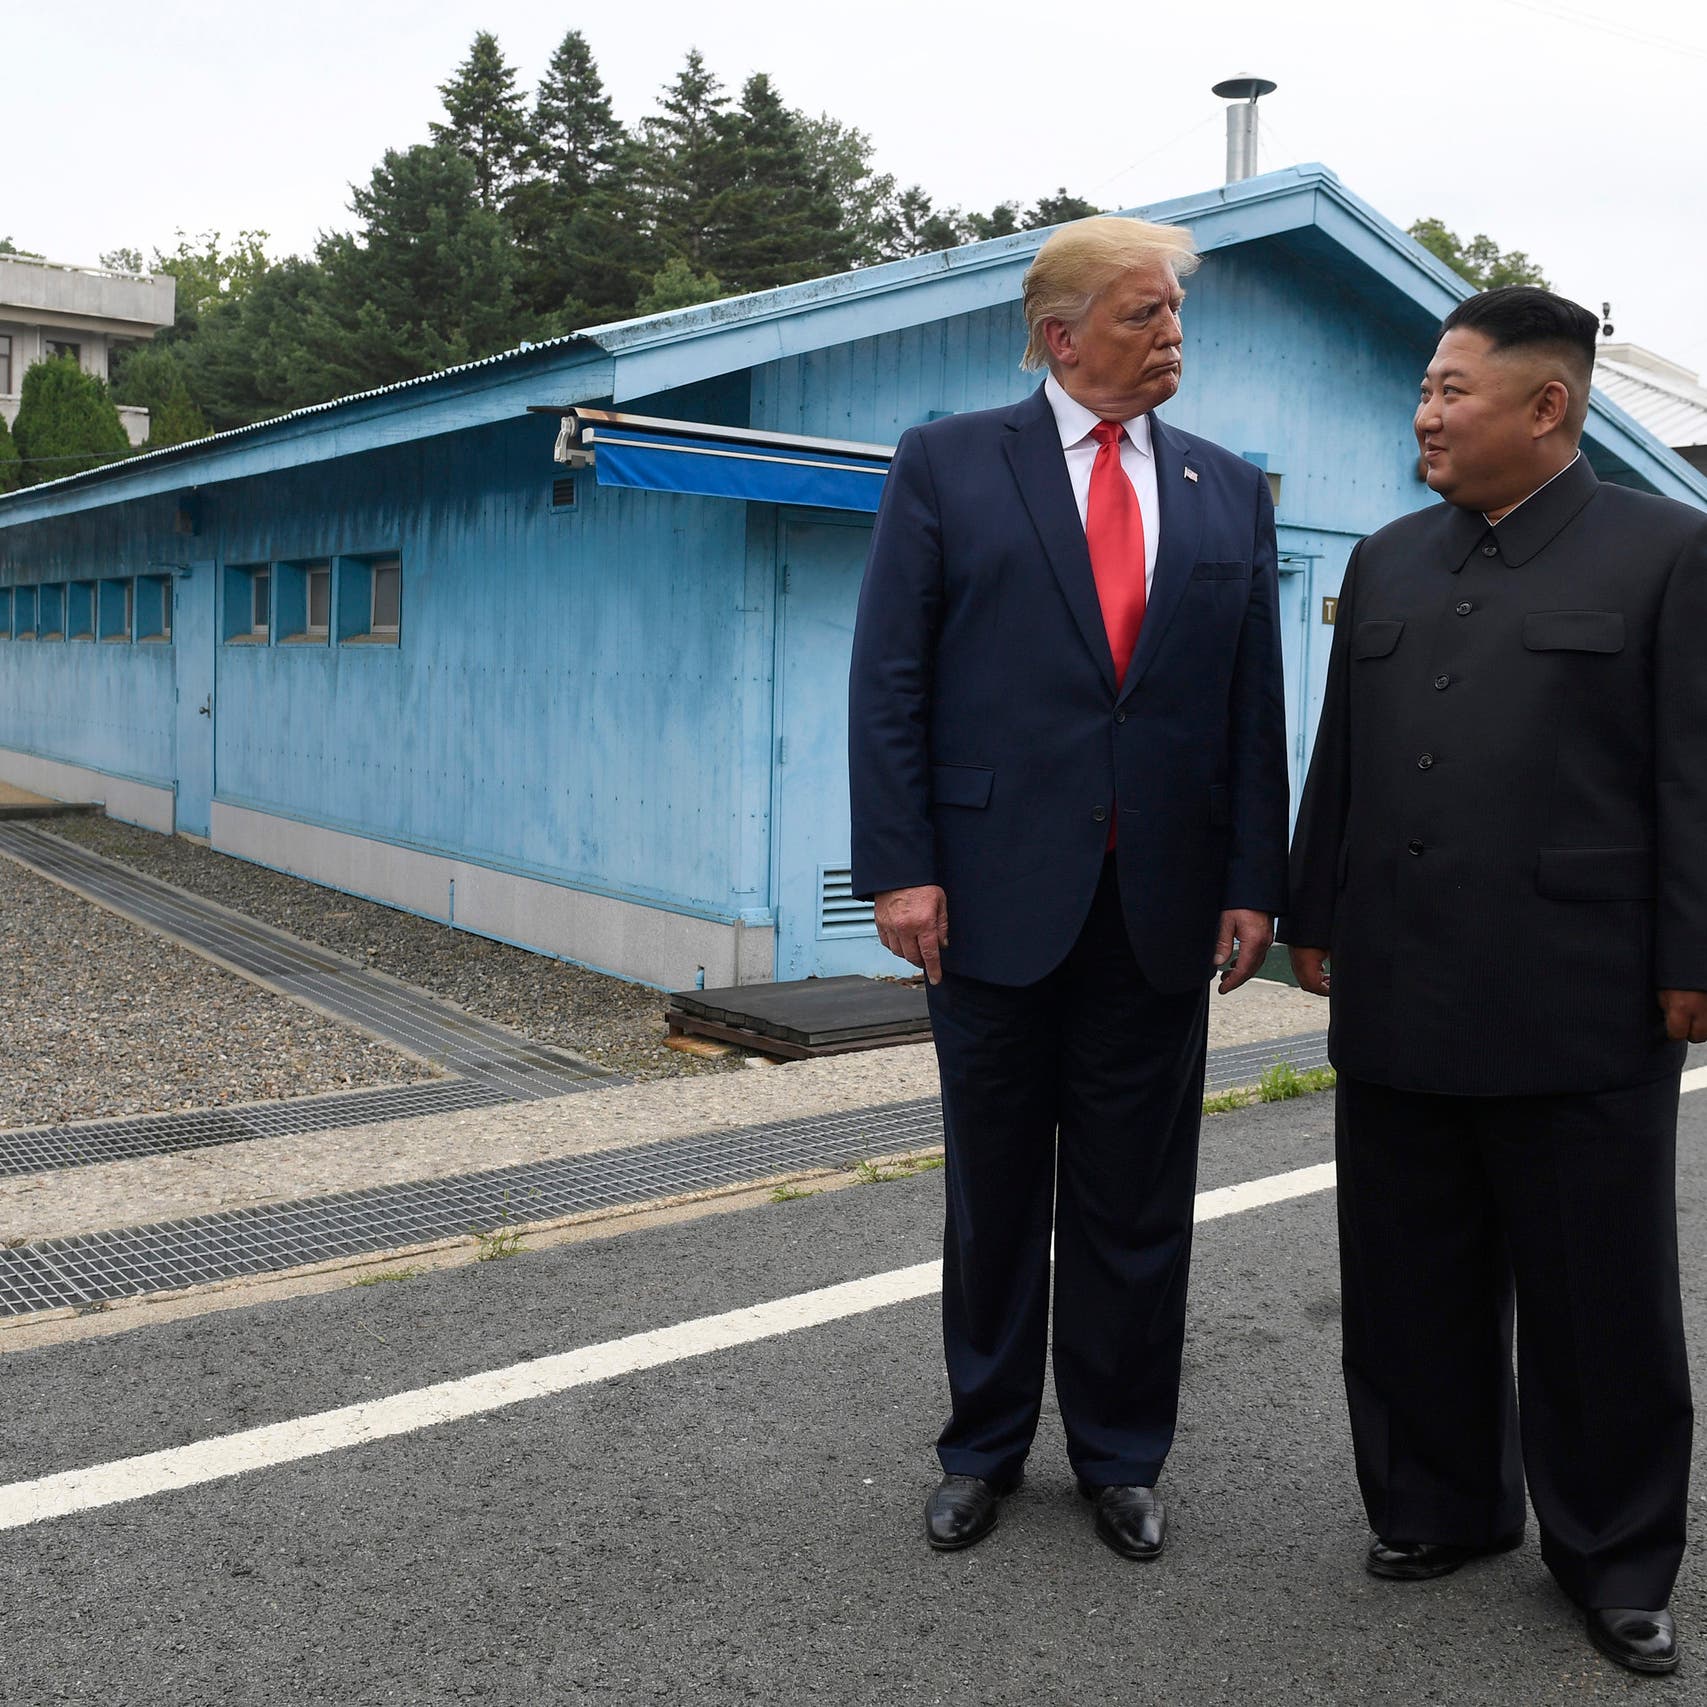 واشنطن تأمل في اتفاق مع كوريا الشمالية رغم شائعات كيم